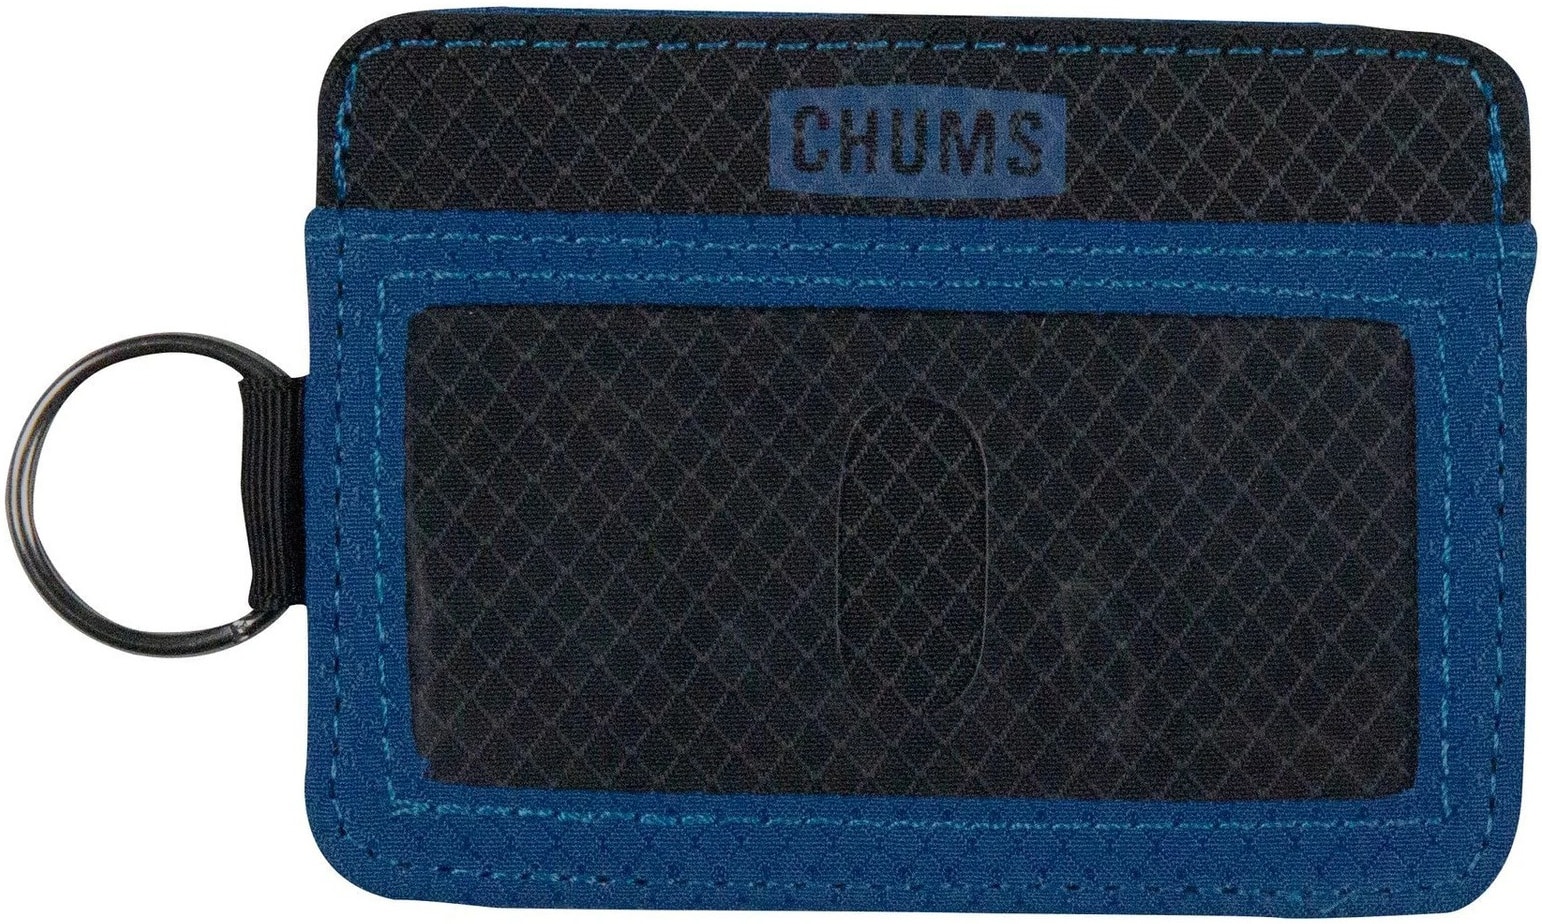 Chums Bandit Wallet - black/blue | Tactics